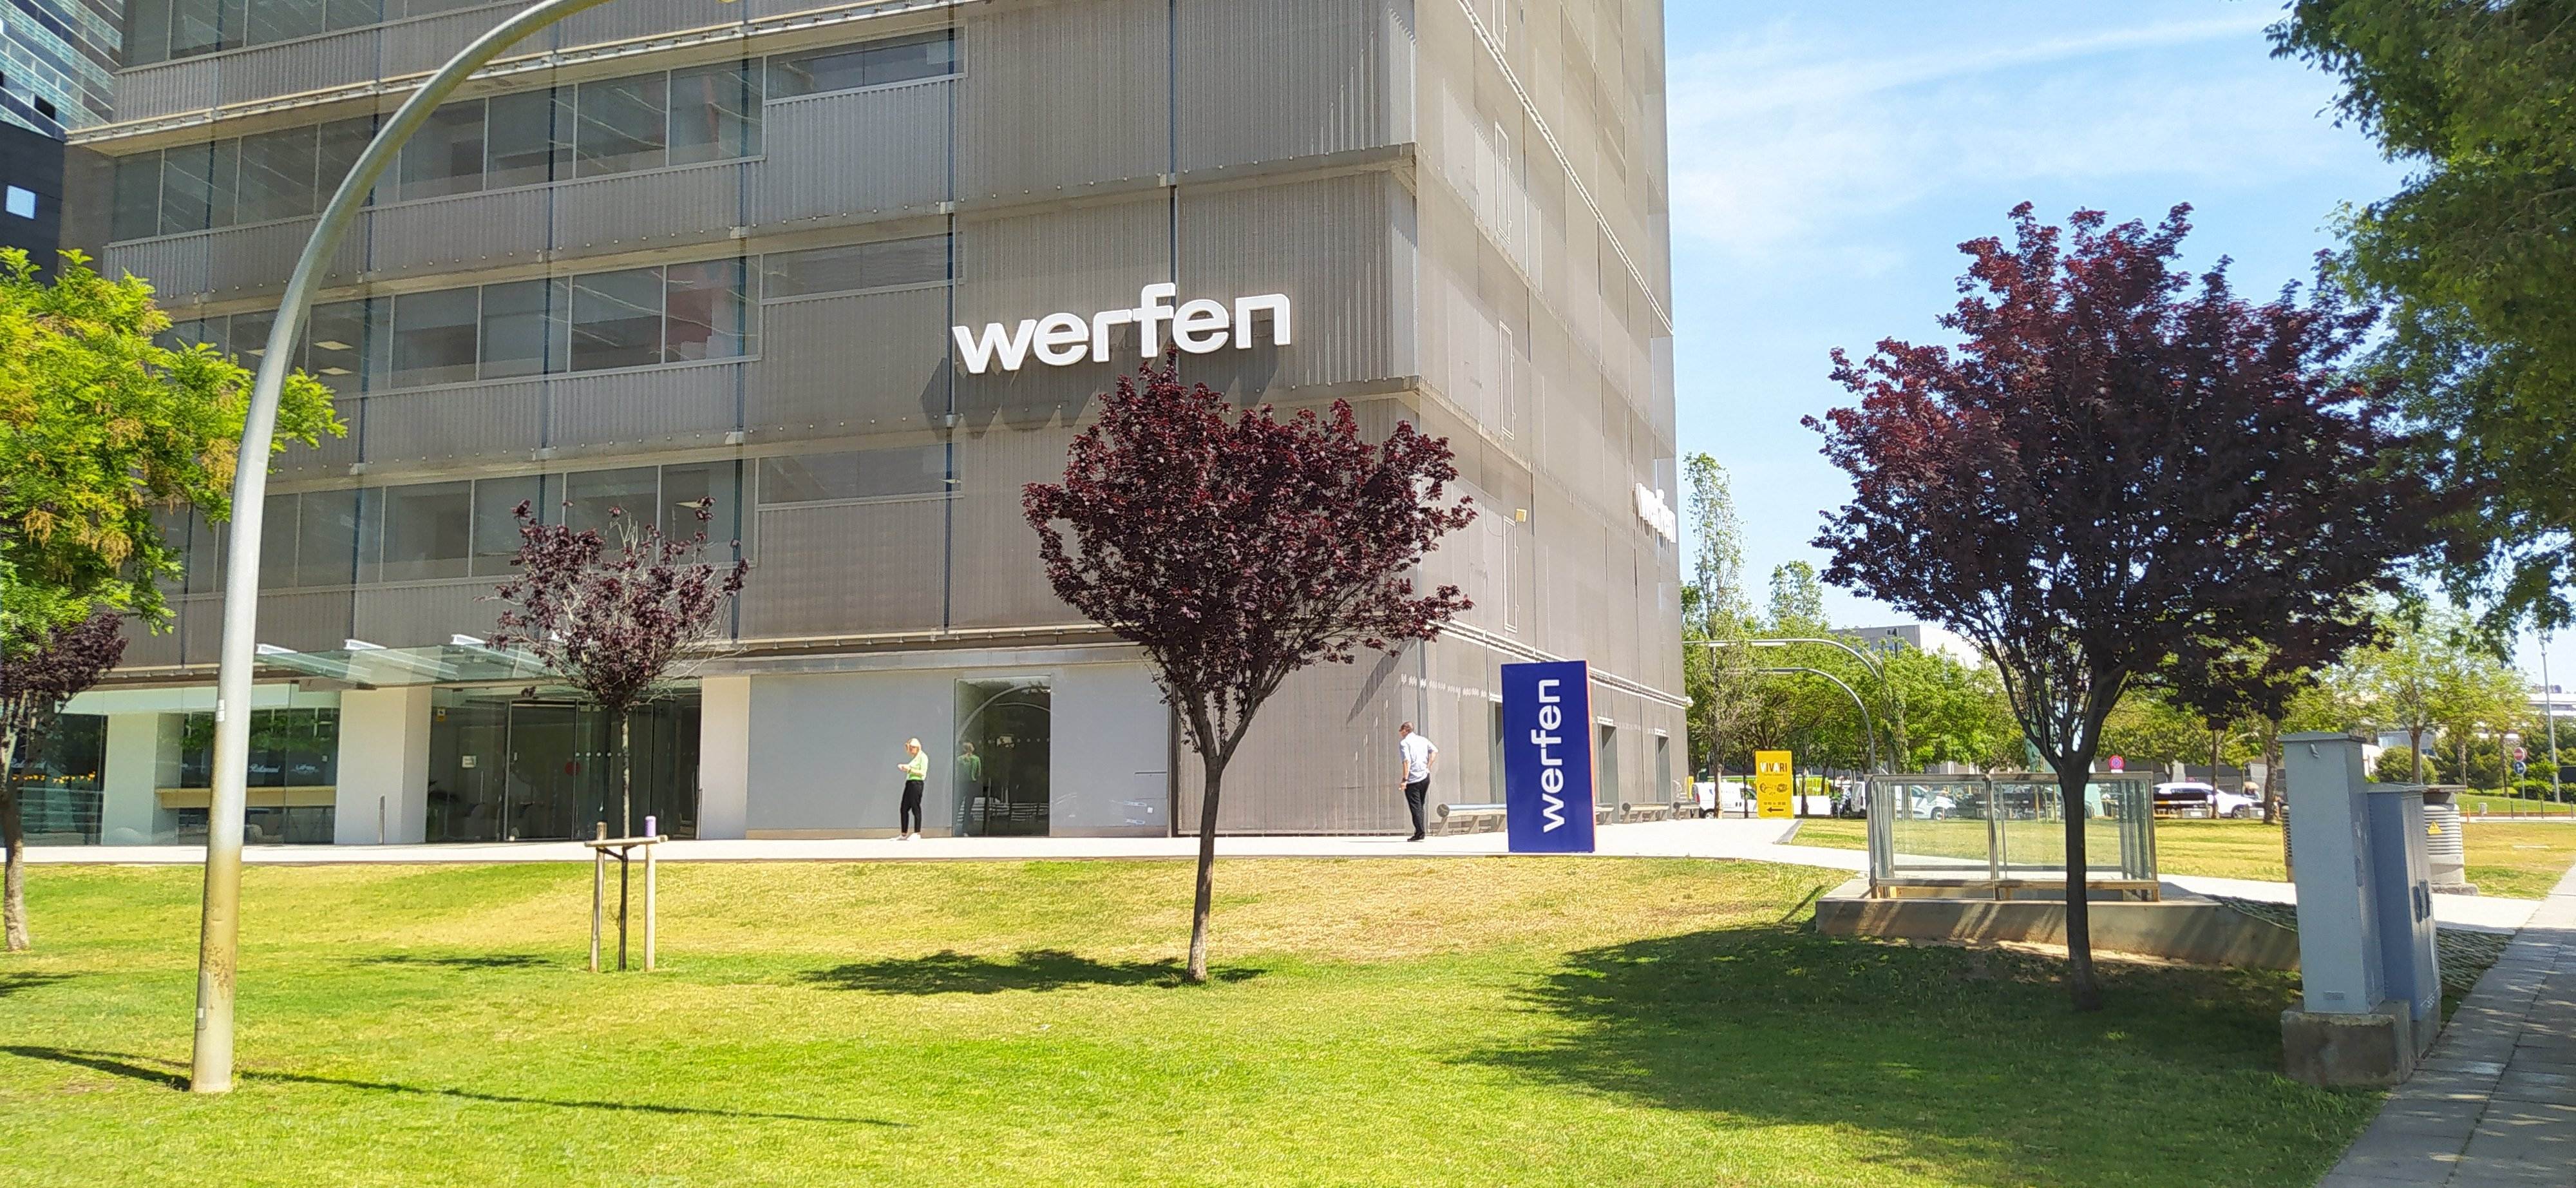 Seu central del grup Werfen, a la plaça Europa de l'Hospitalet de Llobregat (Barcelona).